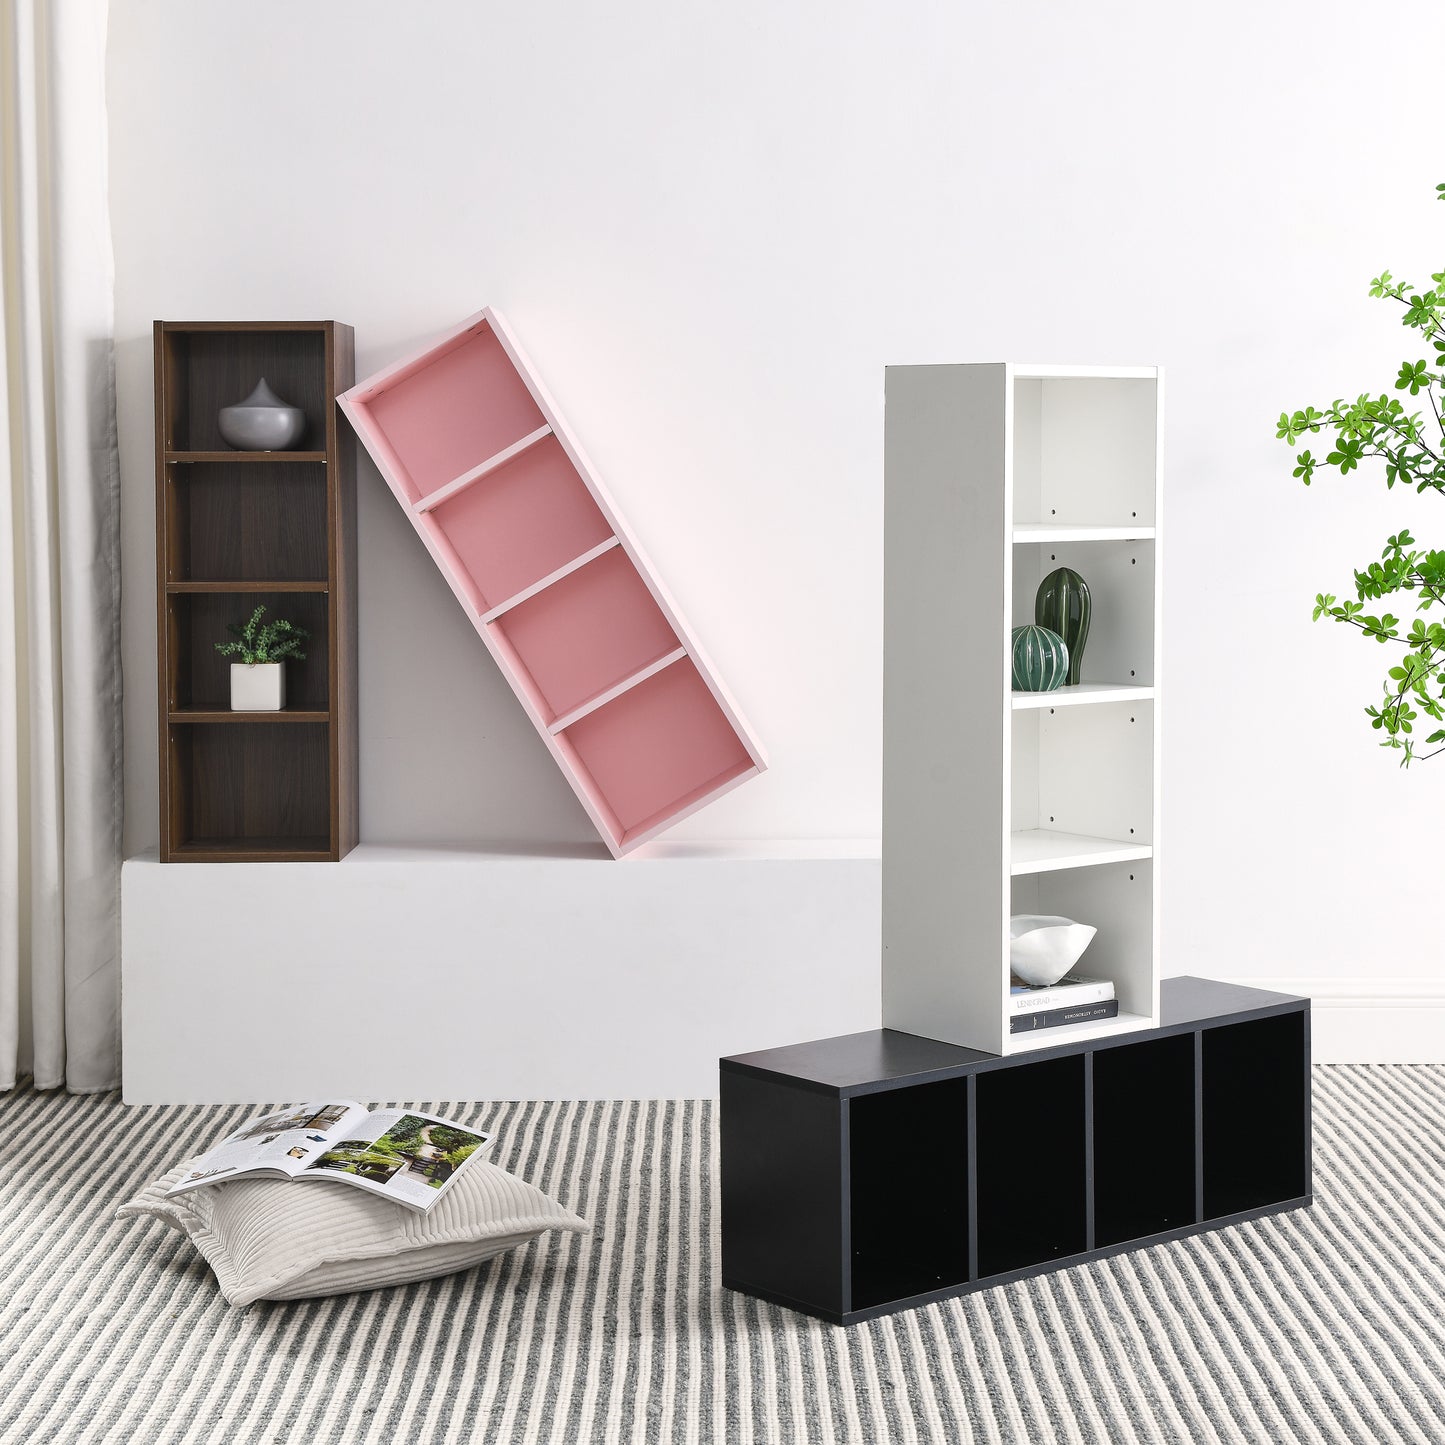 8-Tier CD/DVD Slim Storage Cabinet With Adjustable Shelves - Ukerr Home